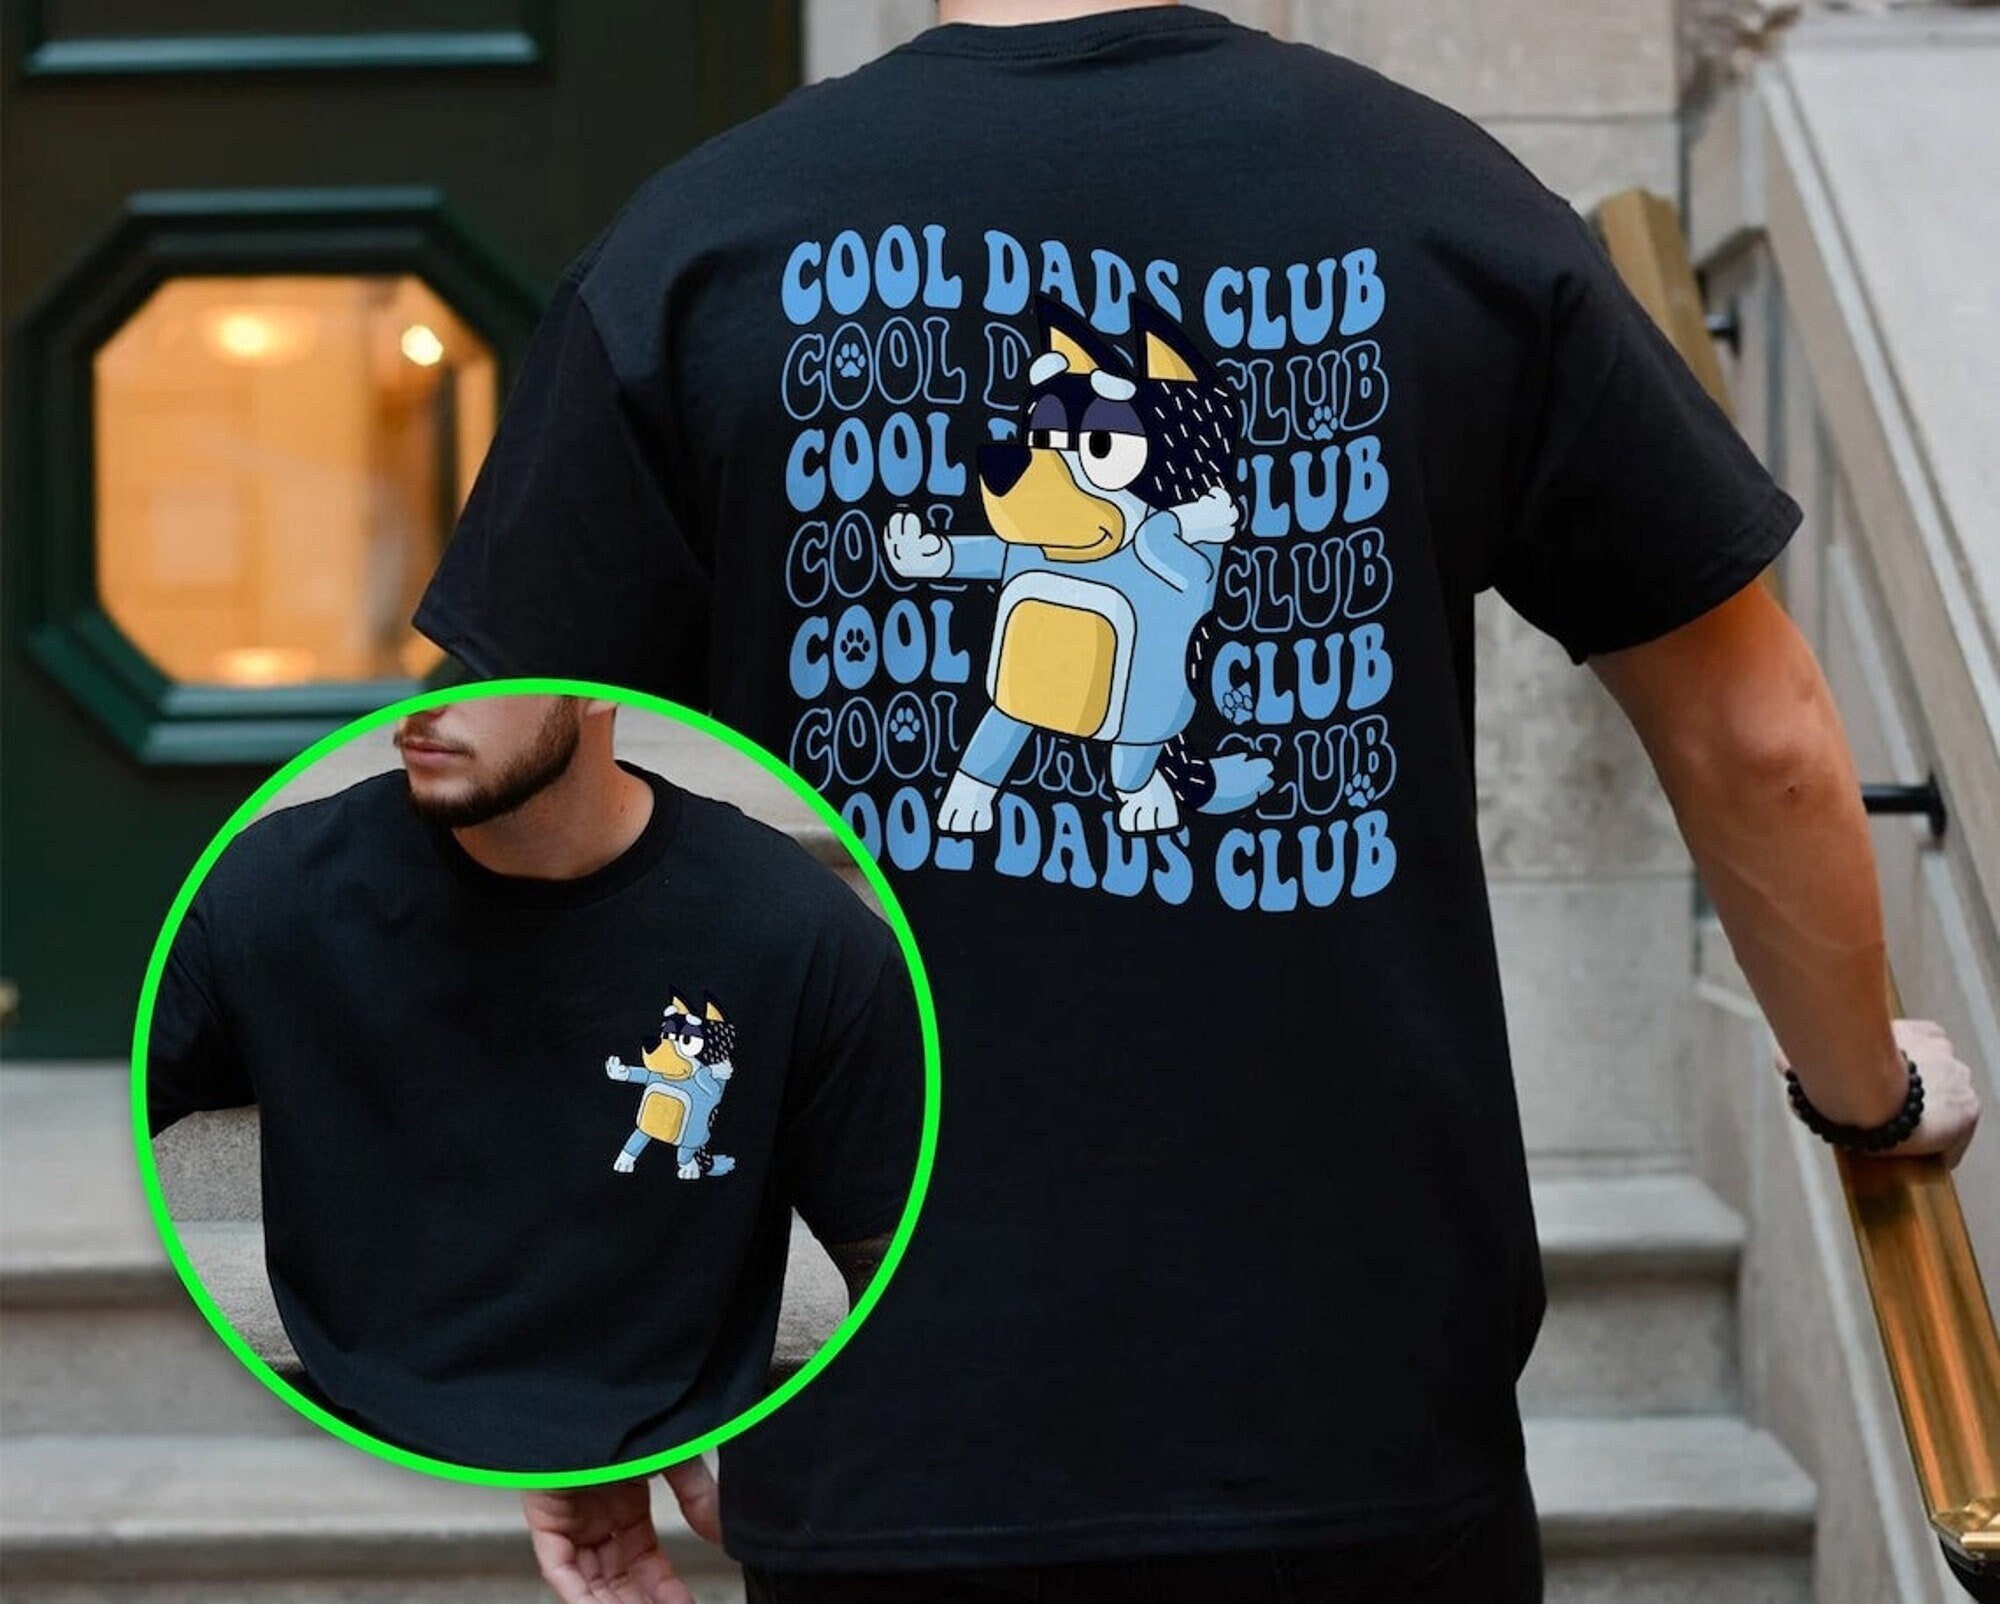 Cool Dad BlueyDad Shirt, Bandit Cool Dad Club T-shirt